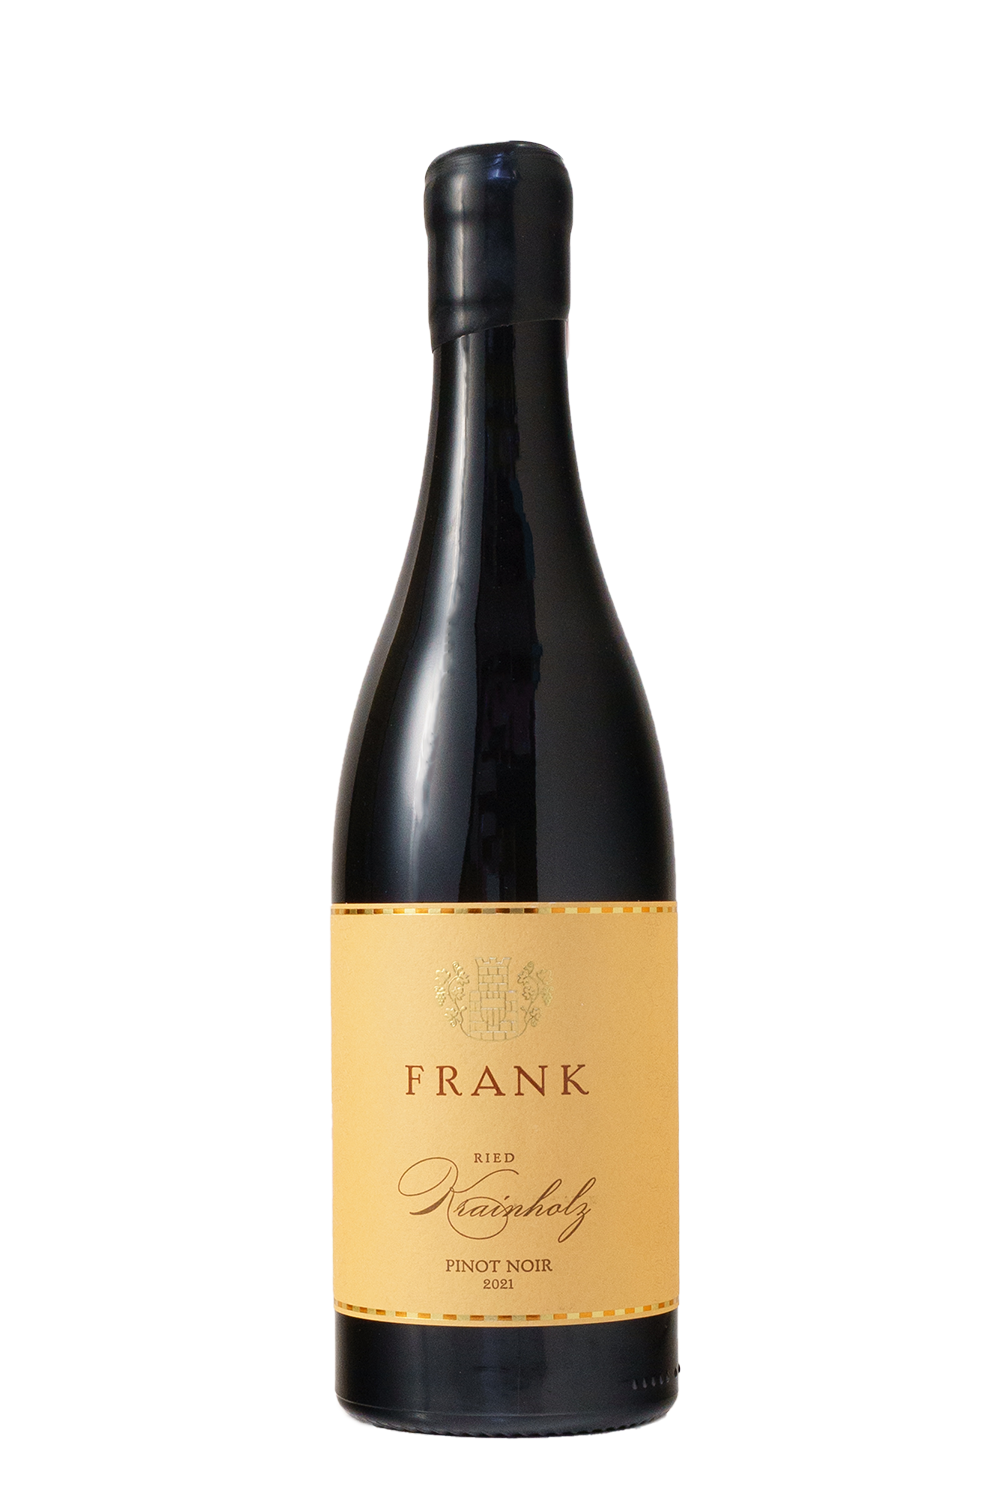 Pinot Noir Ried Krainholz Frank 2021